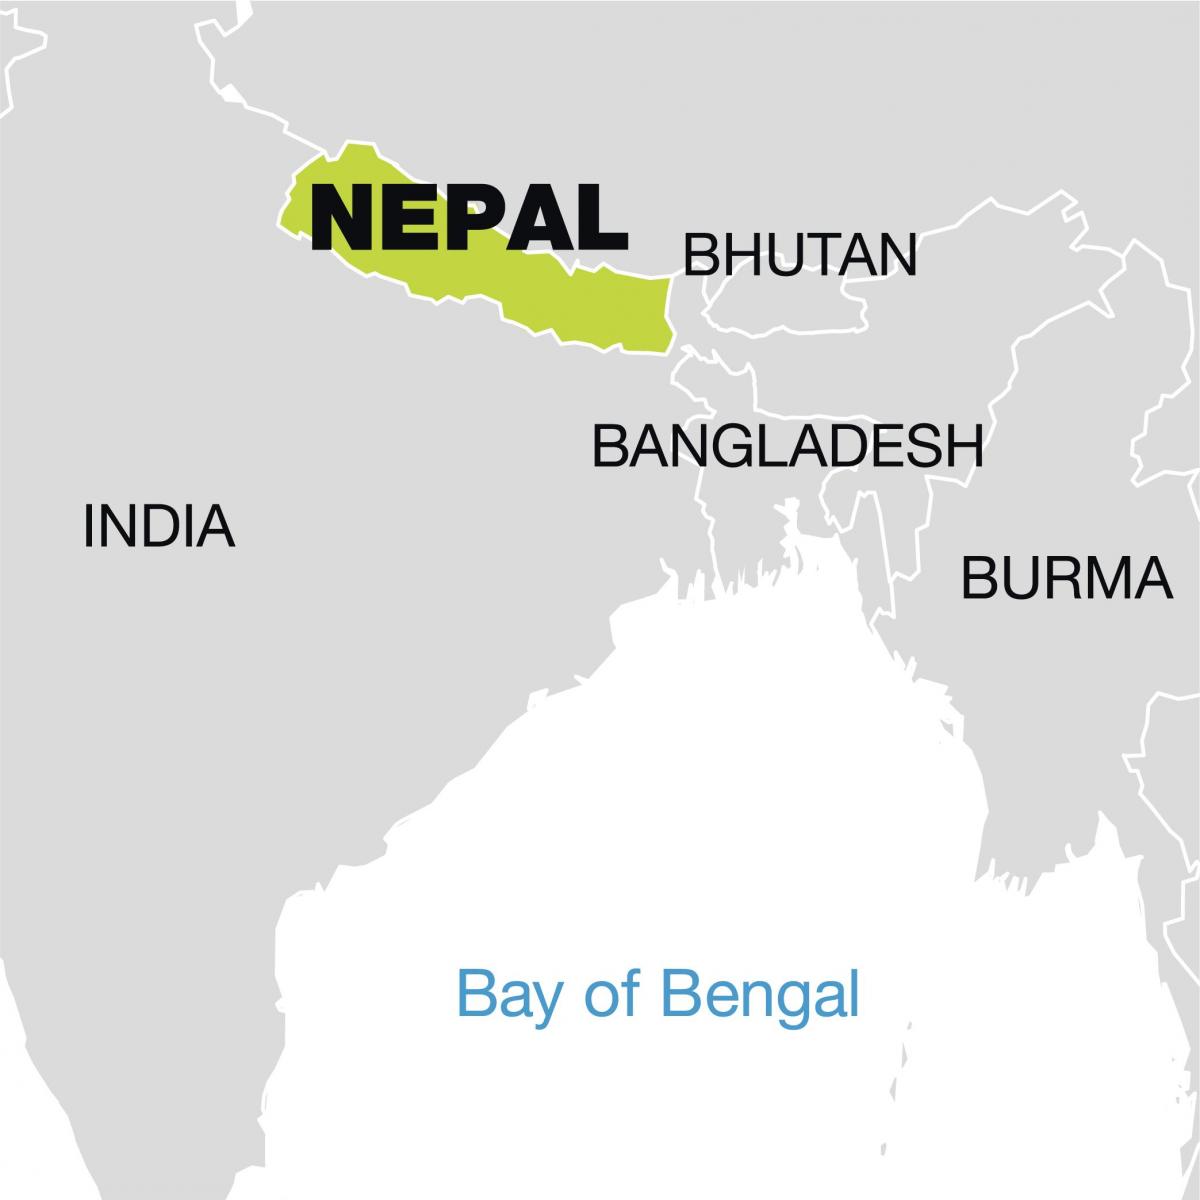 خريطة العالم تظهر نيبال